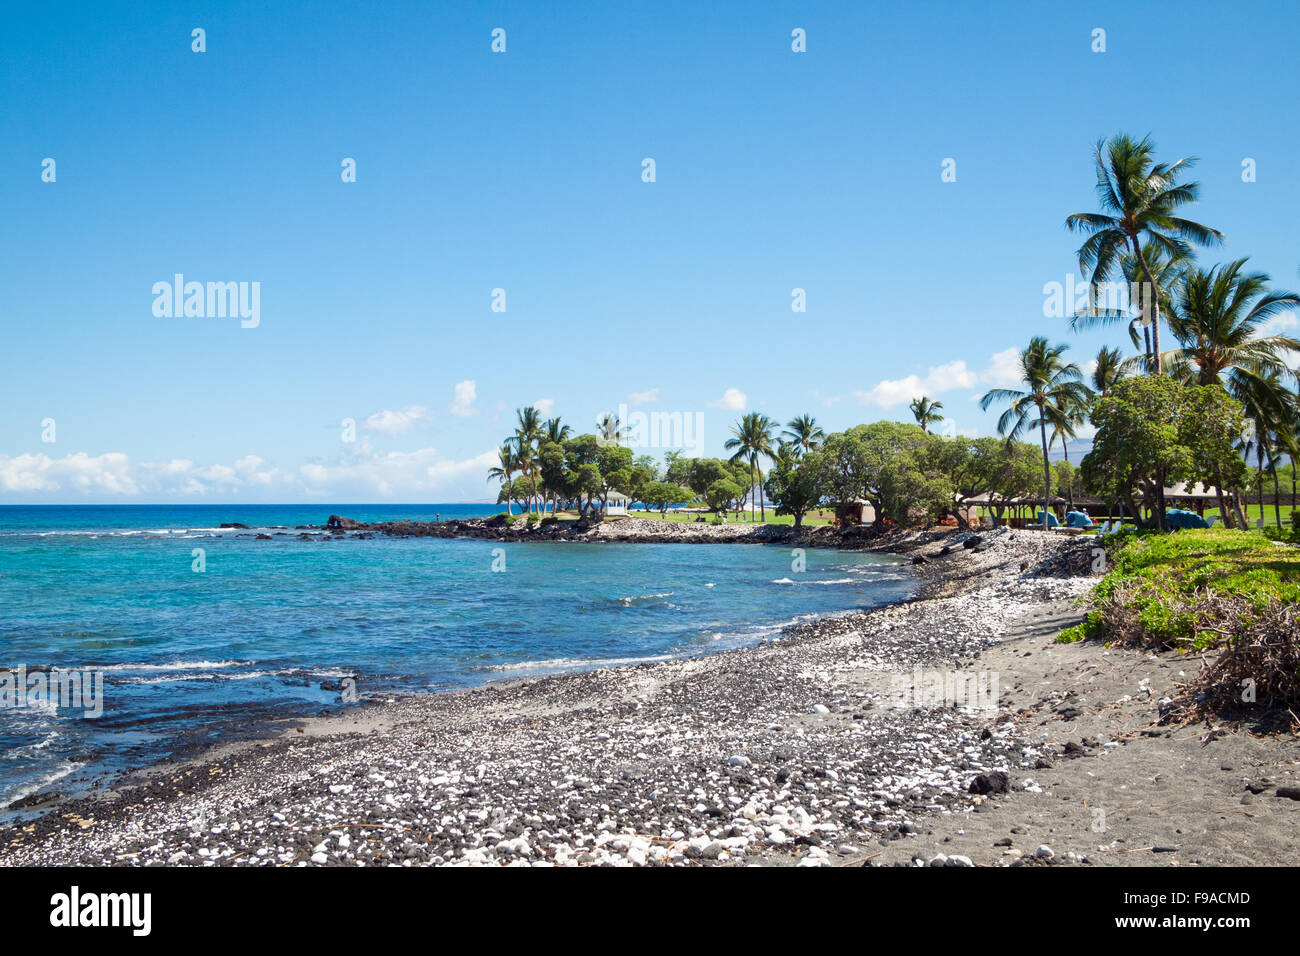 Ein Blick auf die Pauoa Bucht und den Strand auf dem Gelände des Fairmont Orchid, ein Luxus-Hotel und Resort an der Kohala Coast, Hawaii. Stockfoto